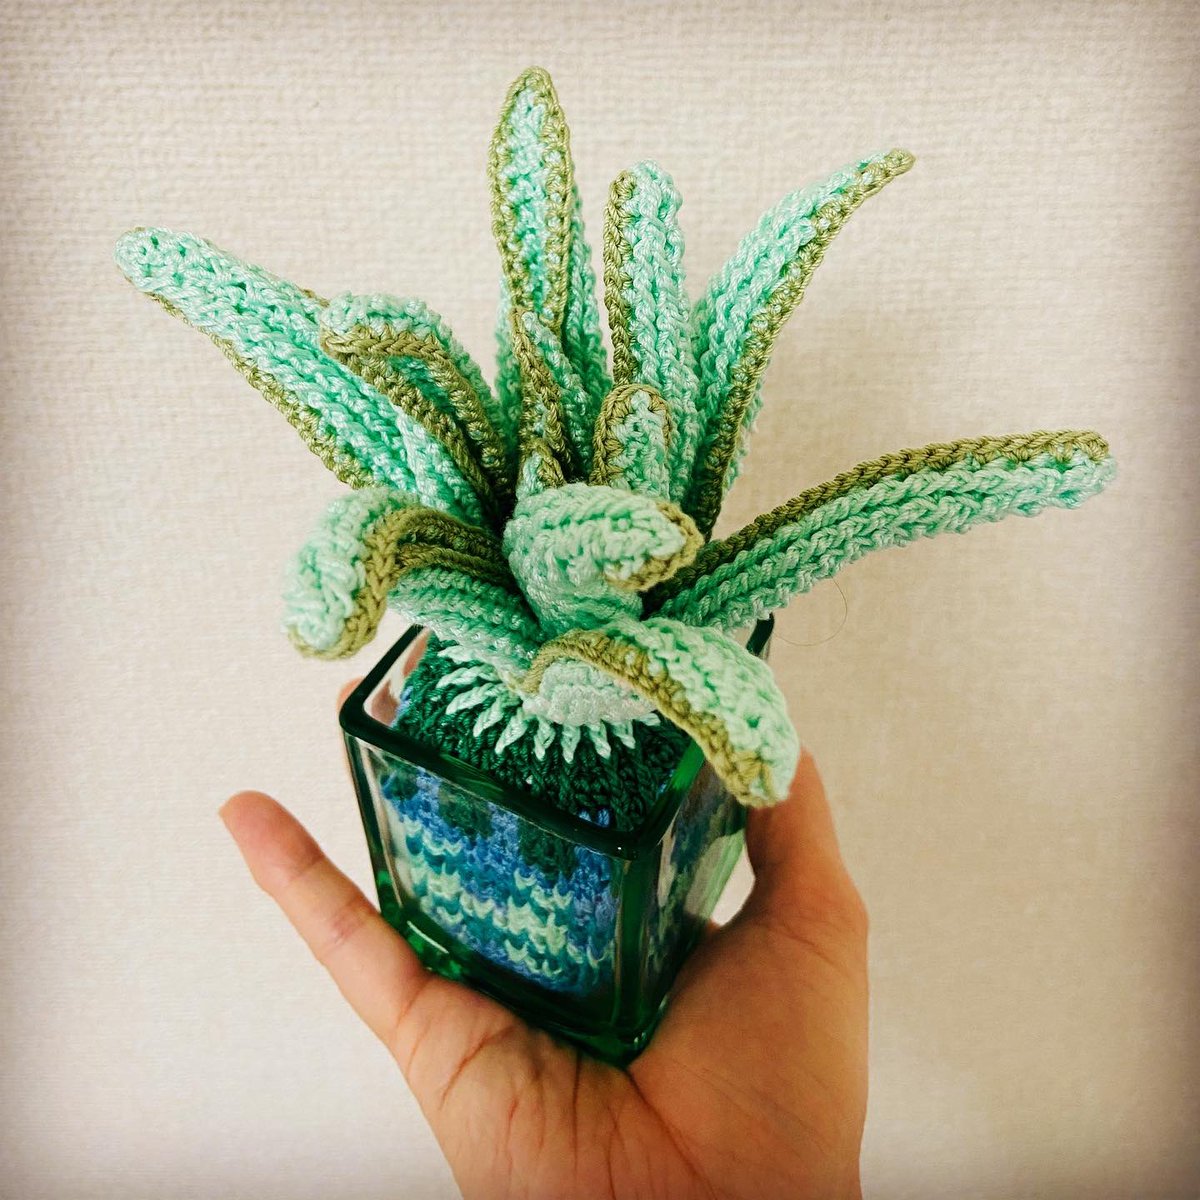 「アロエいろいろ#編み物 #crochet #アロエ #aloe 」|knitting artist alaのイラスト